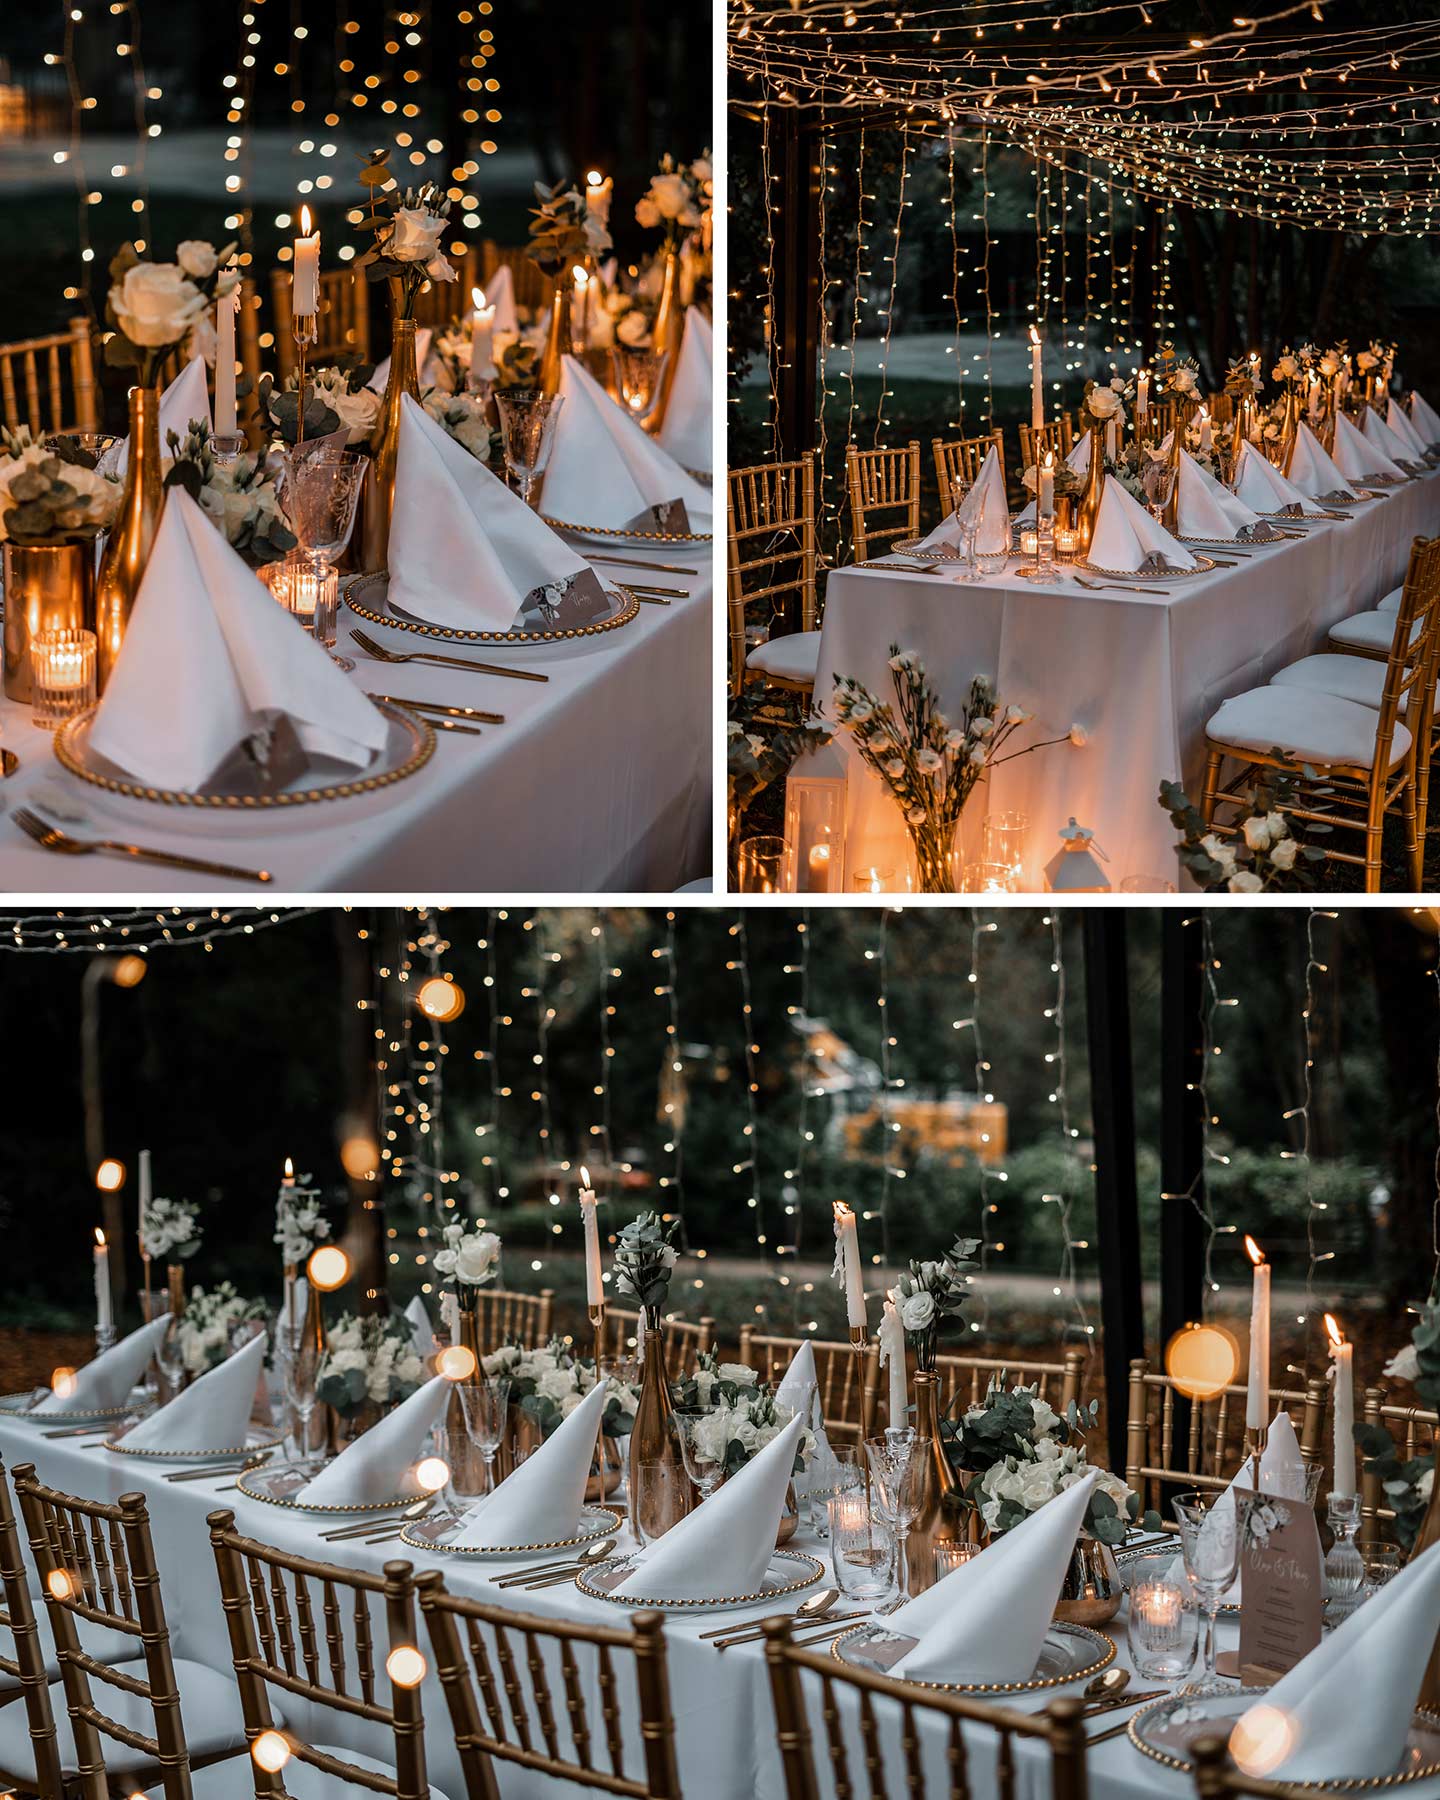 Die Hochzeitstafel erstrahlt im Halbdunkeln unter den vielen Lichtern der Lichterketten und ist bereit für die Gäste.